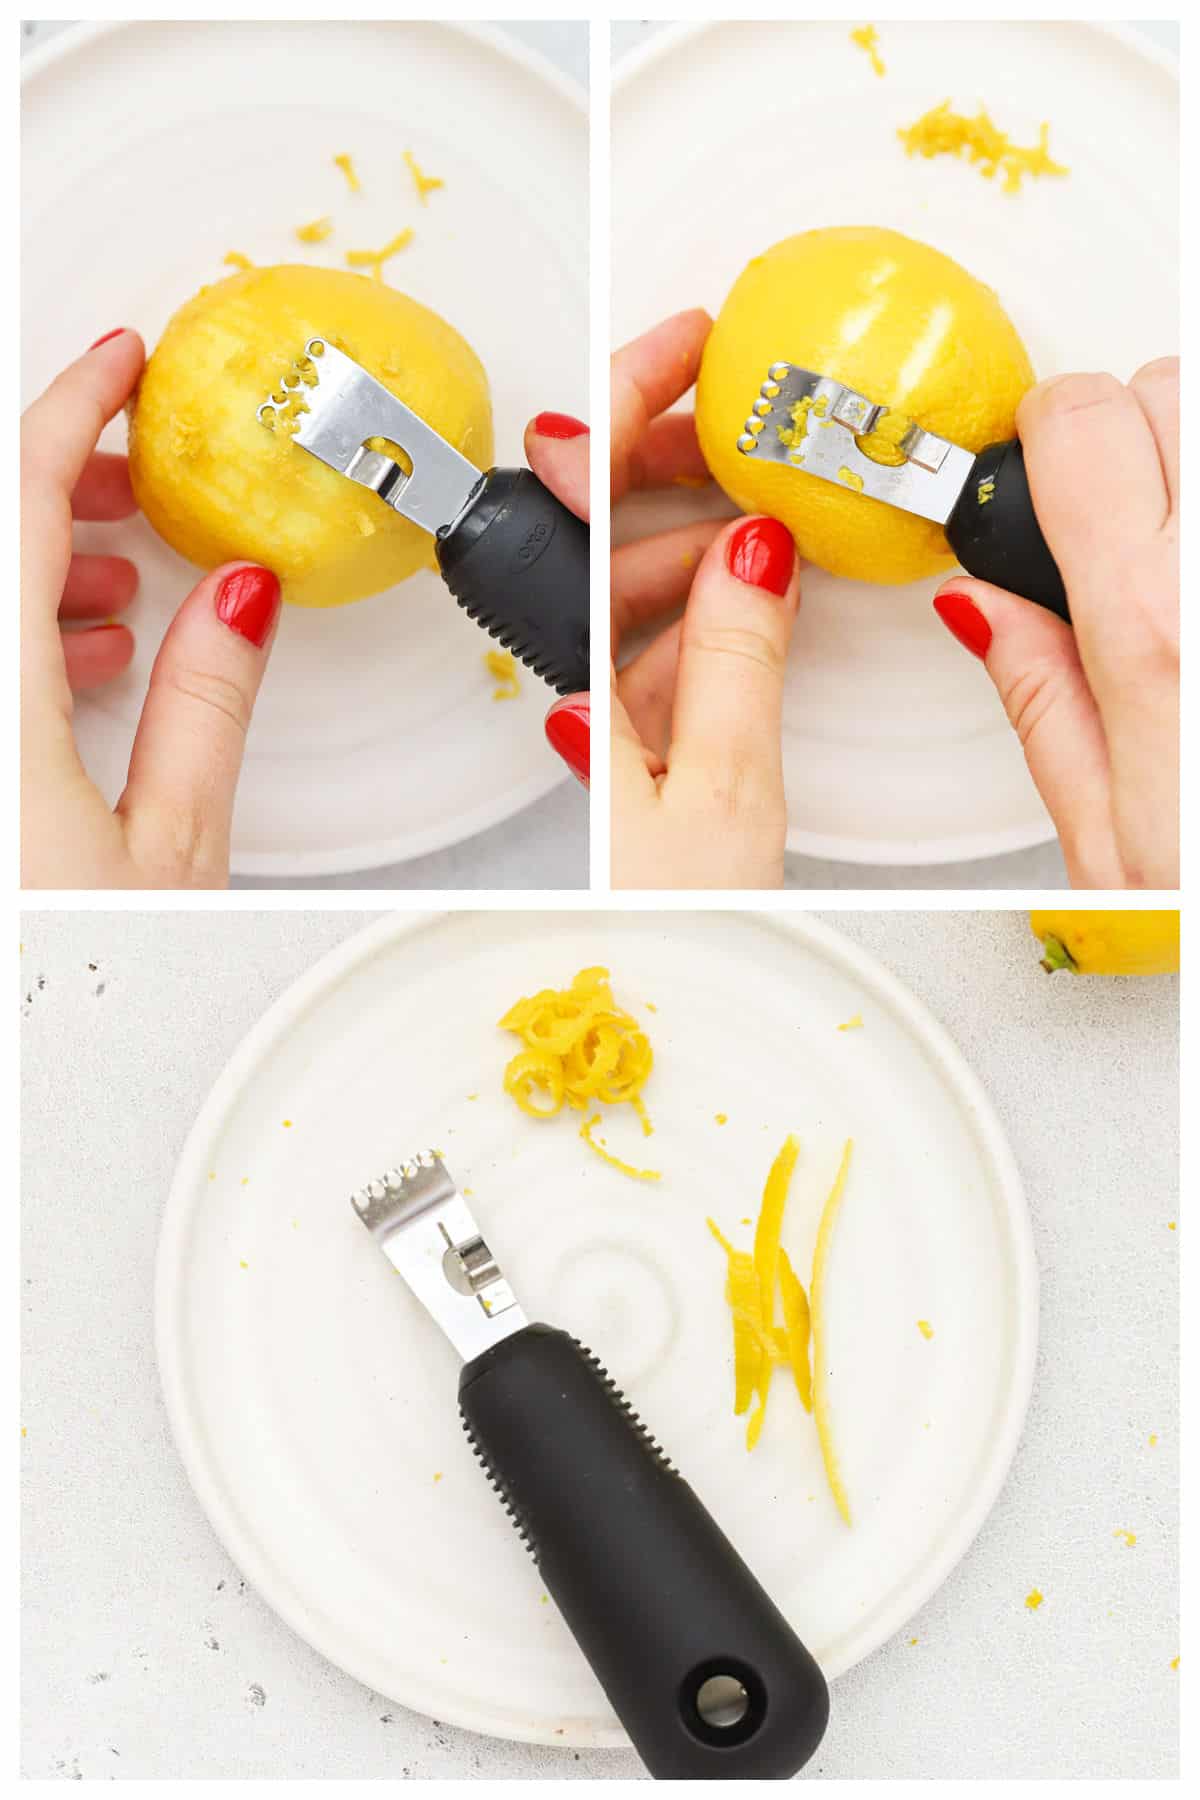 zest a lemon with a citrus zester